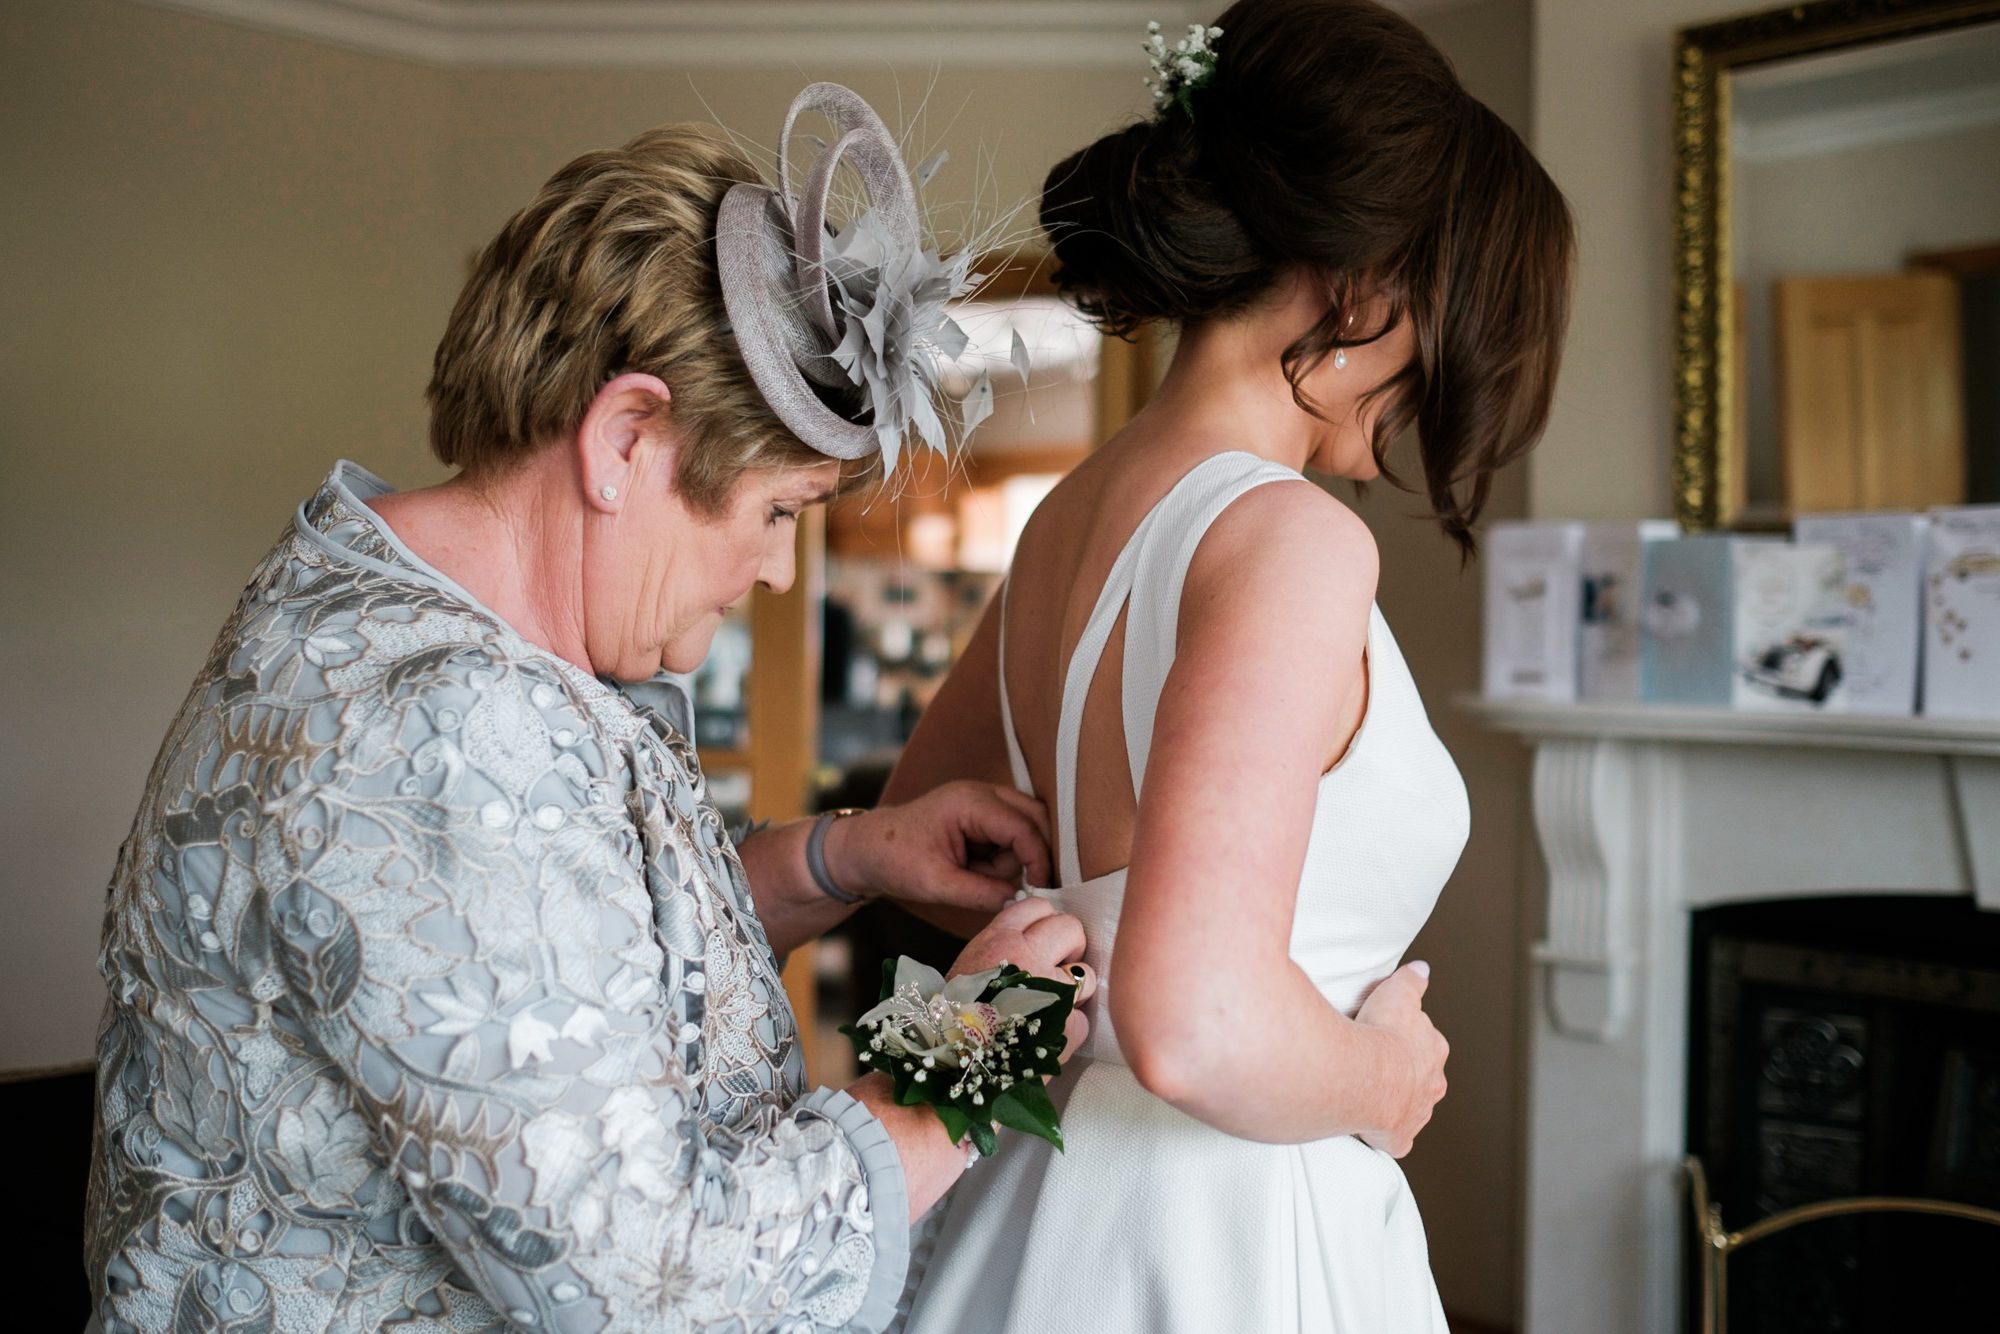 mum doing bride's buttons